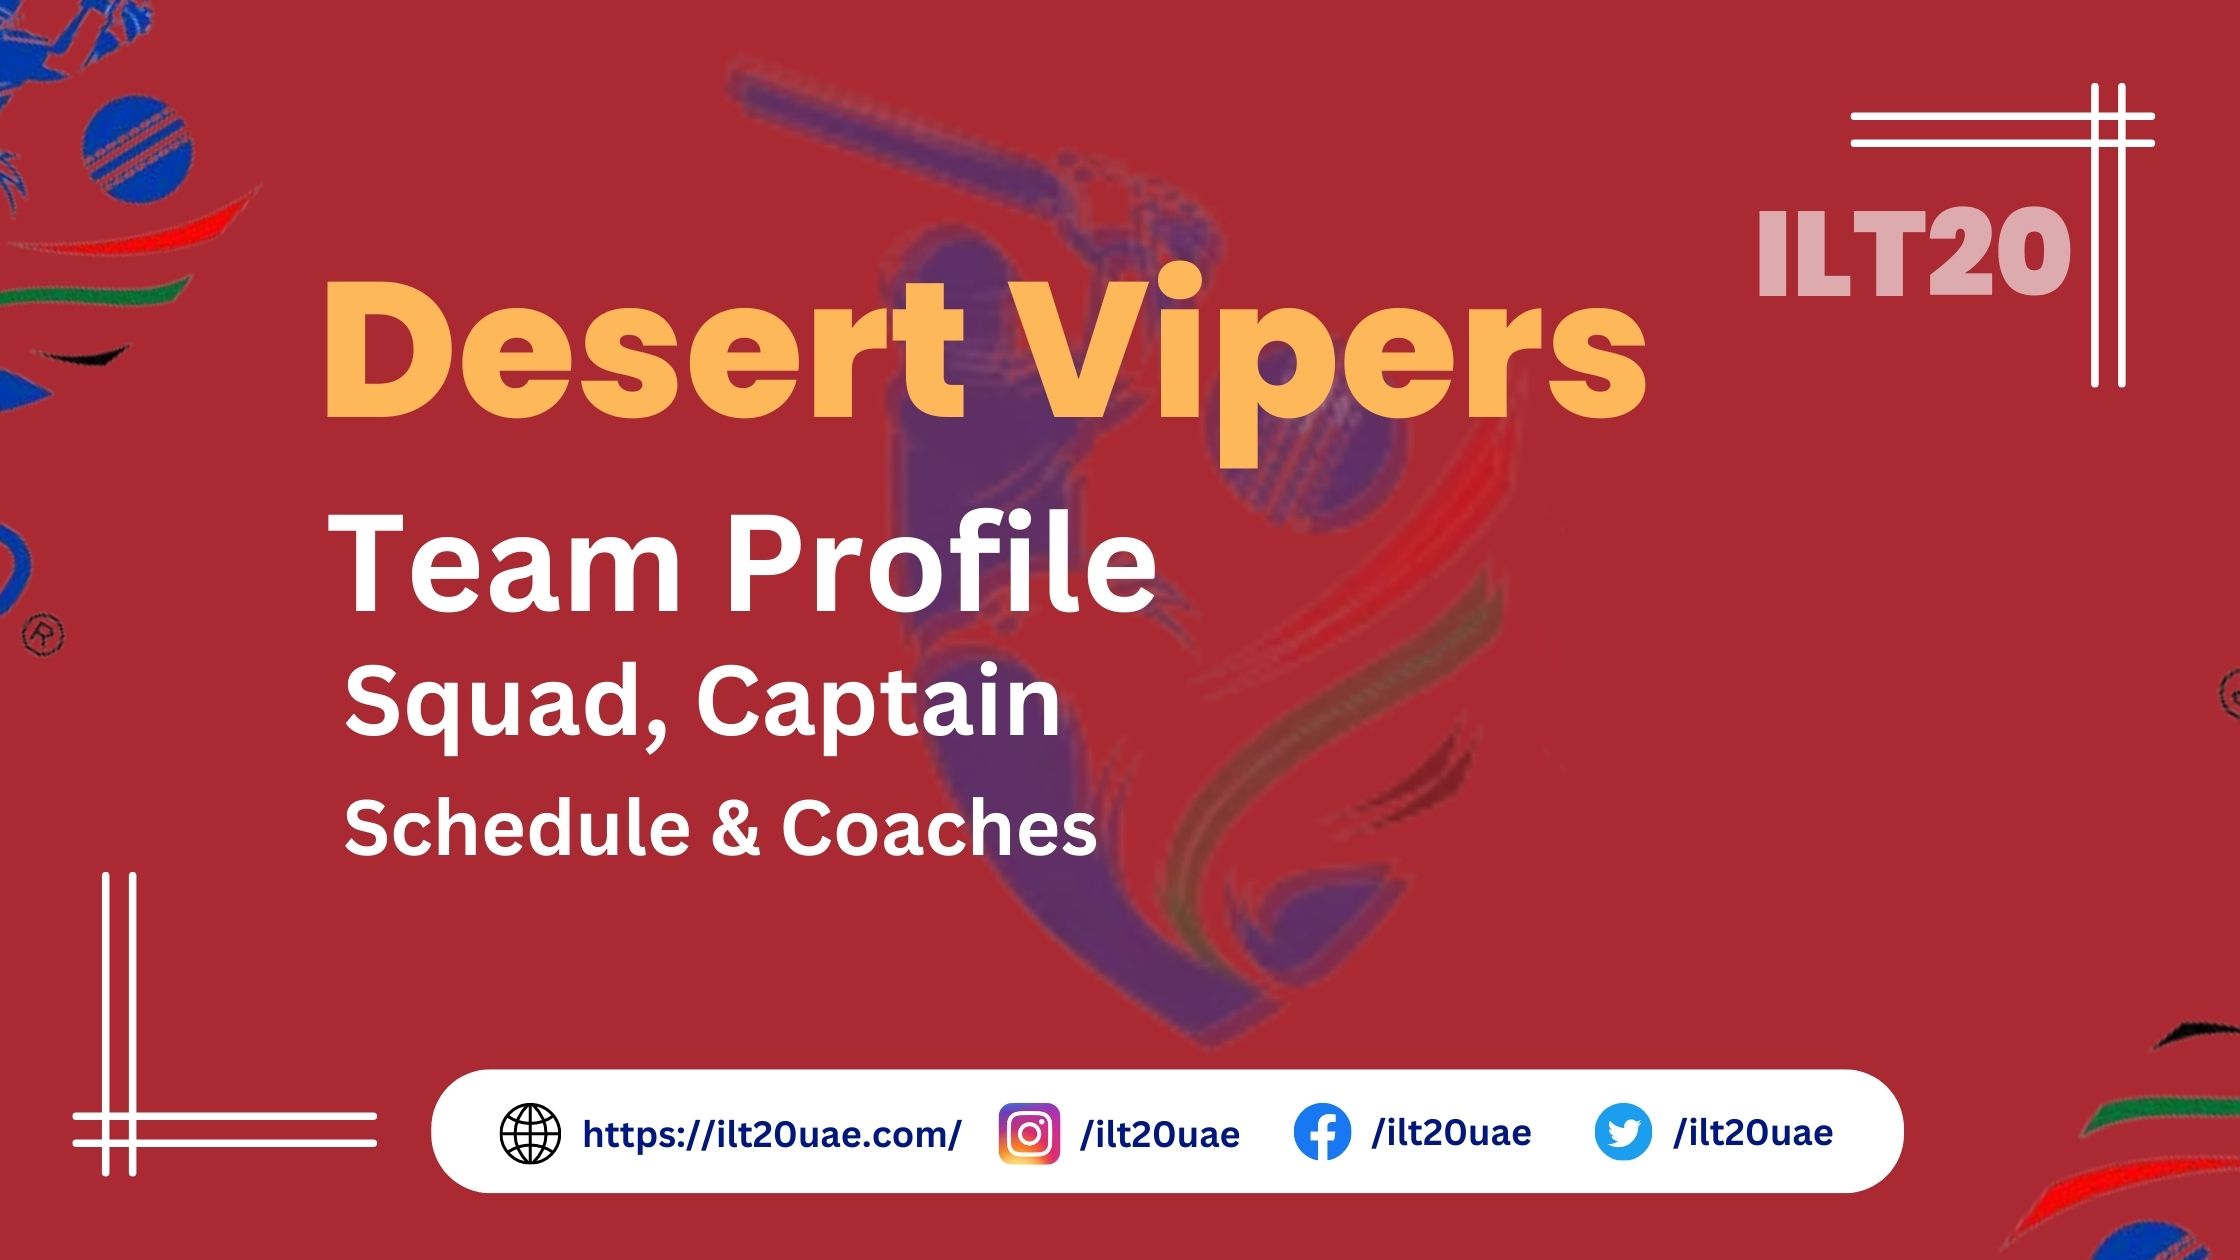 Desert Vipers Team